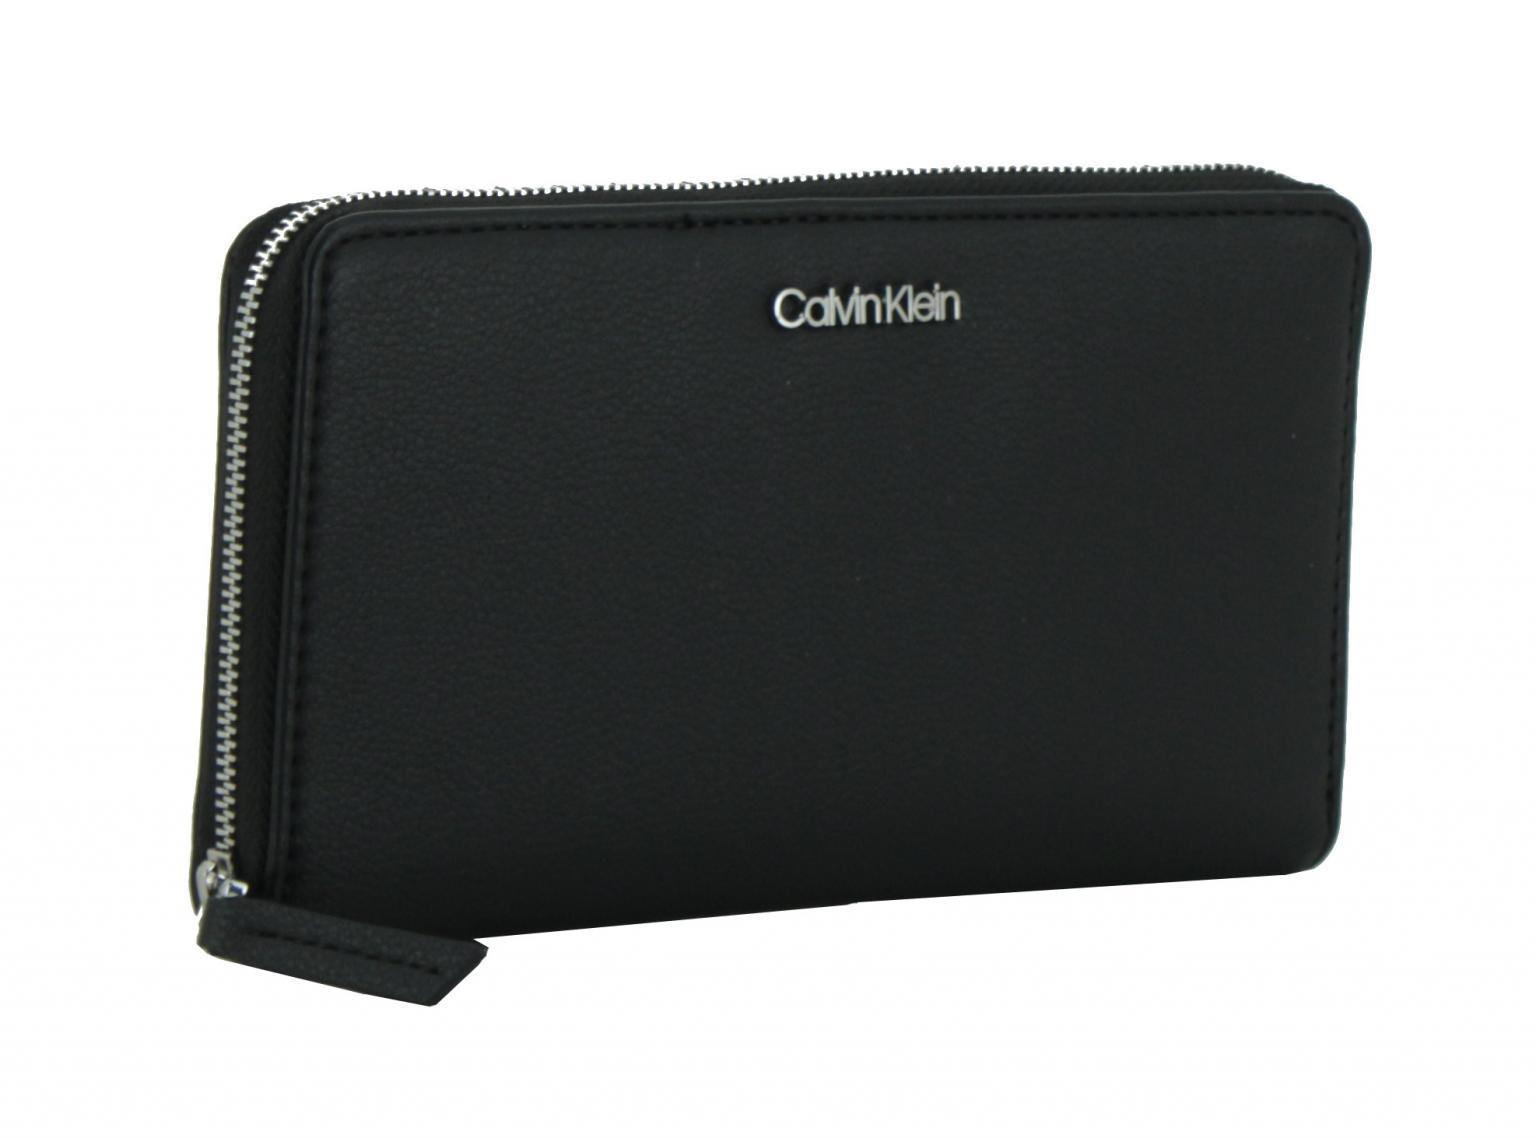 Brieftasche Big Calvin Klein ZA Wallet XL Black Clutch RFID